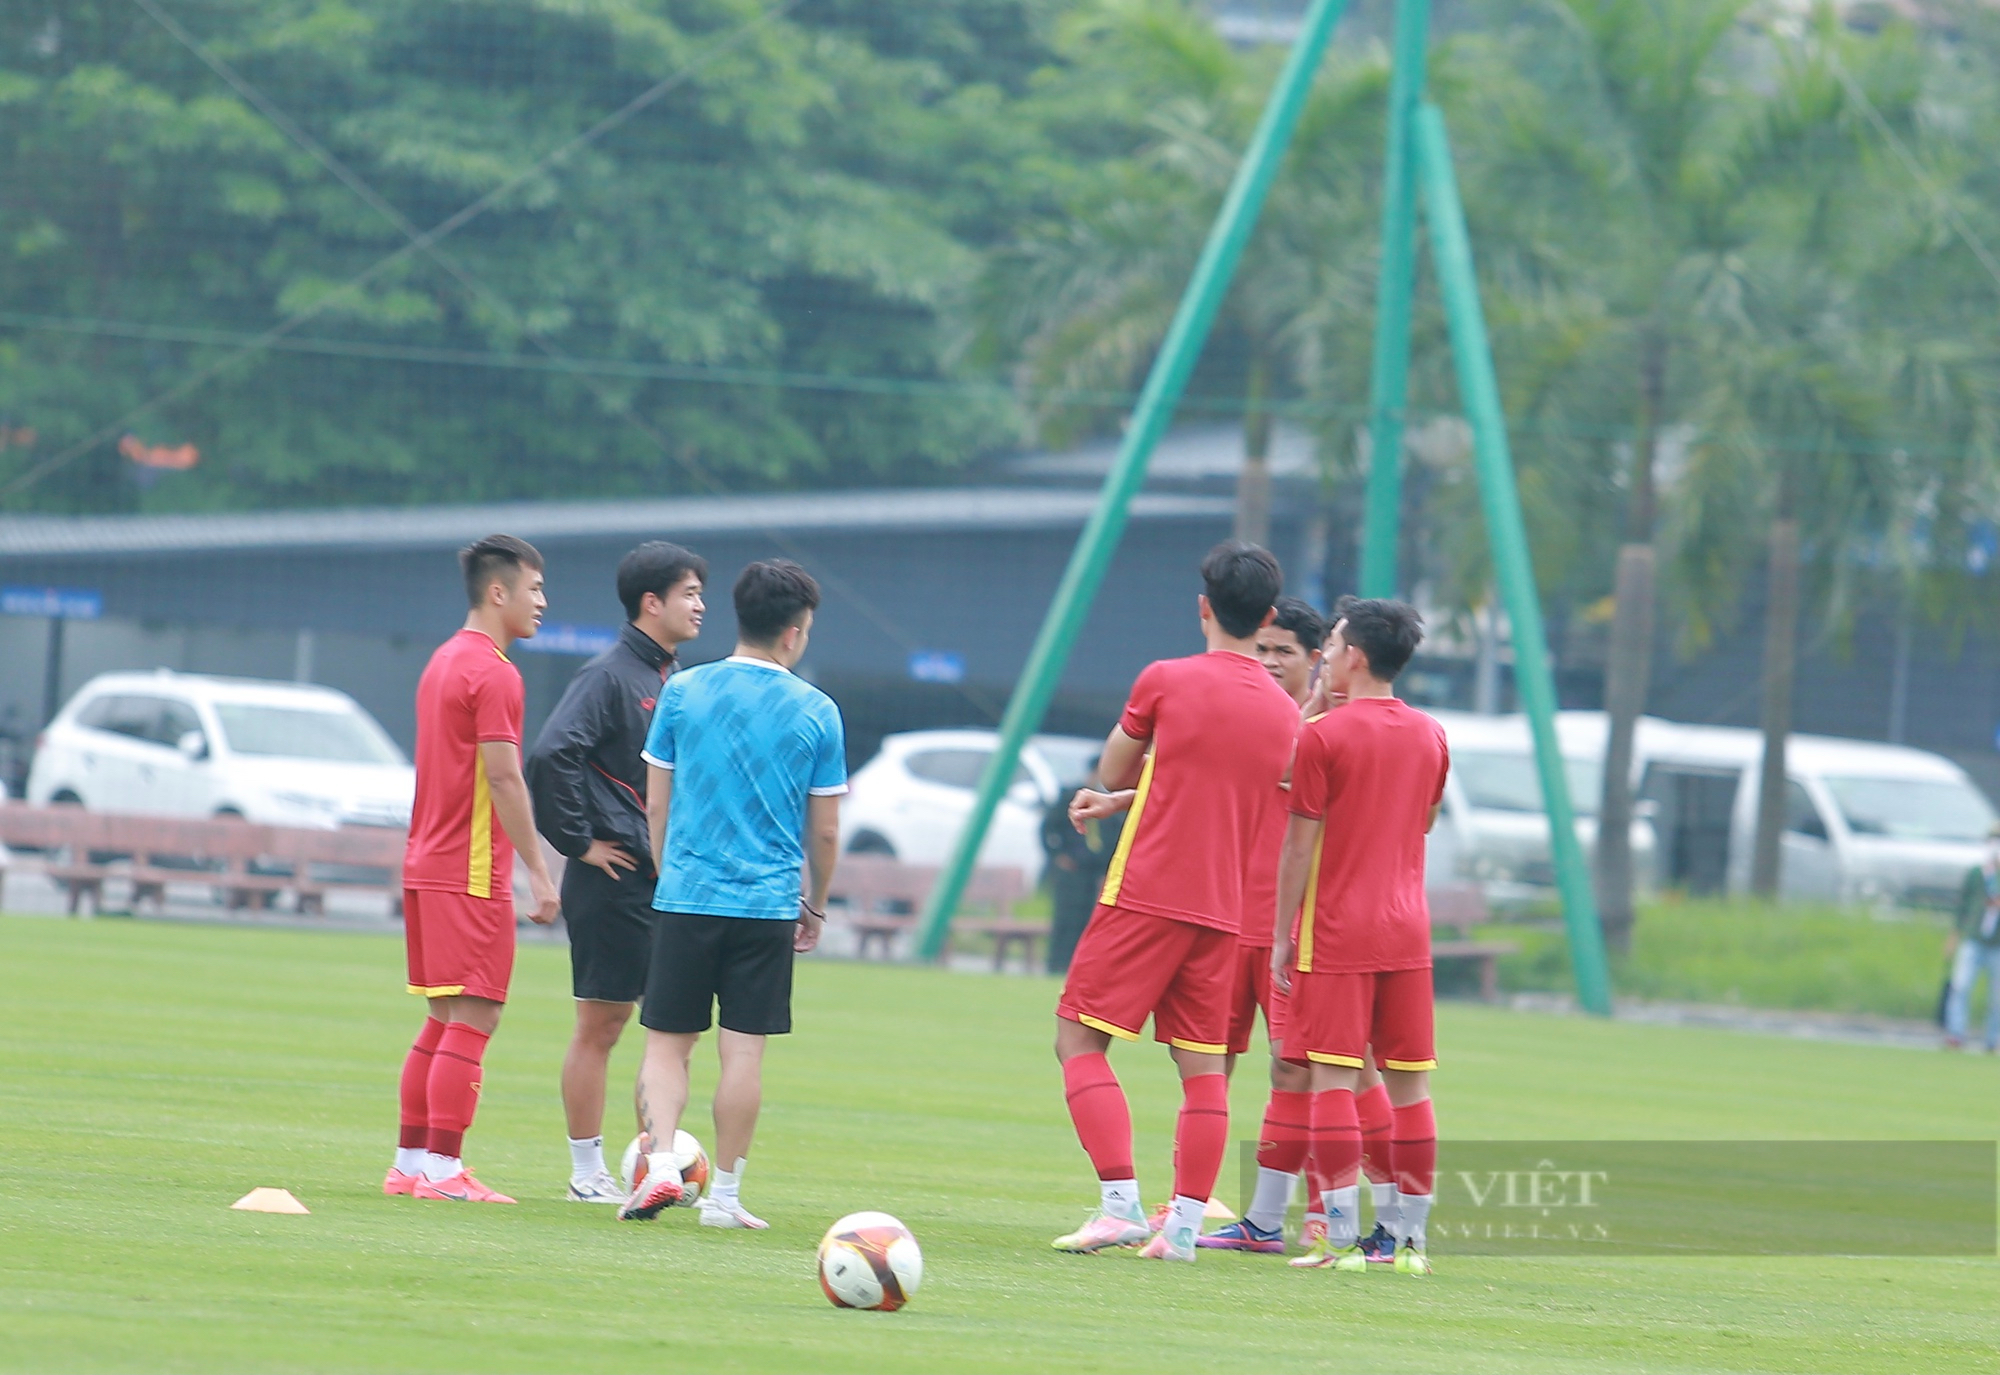 HLV Park Hang-seo không có mặt trong buổi tập của U23 Việt Nam - Ảnh 5.